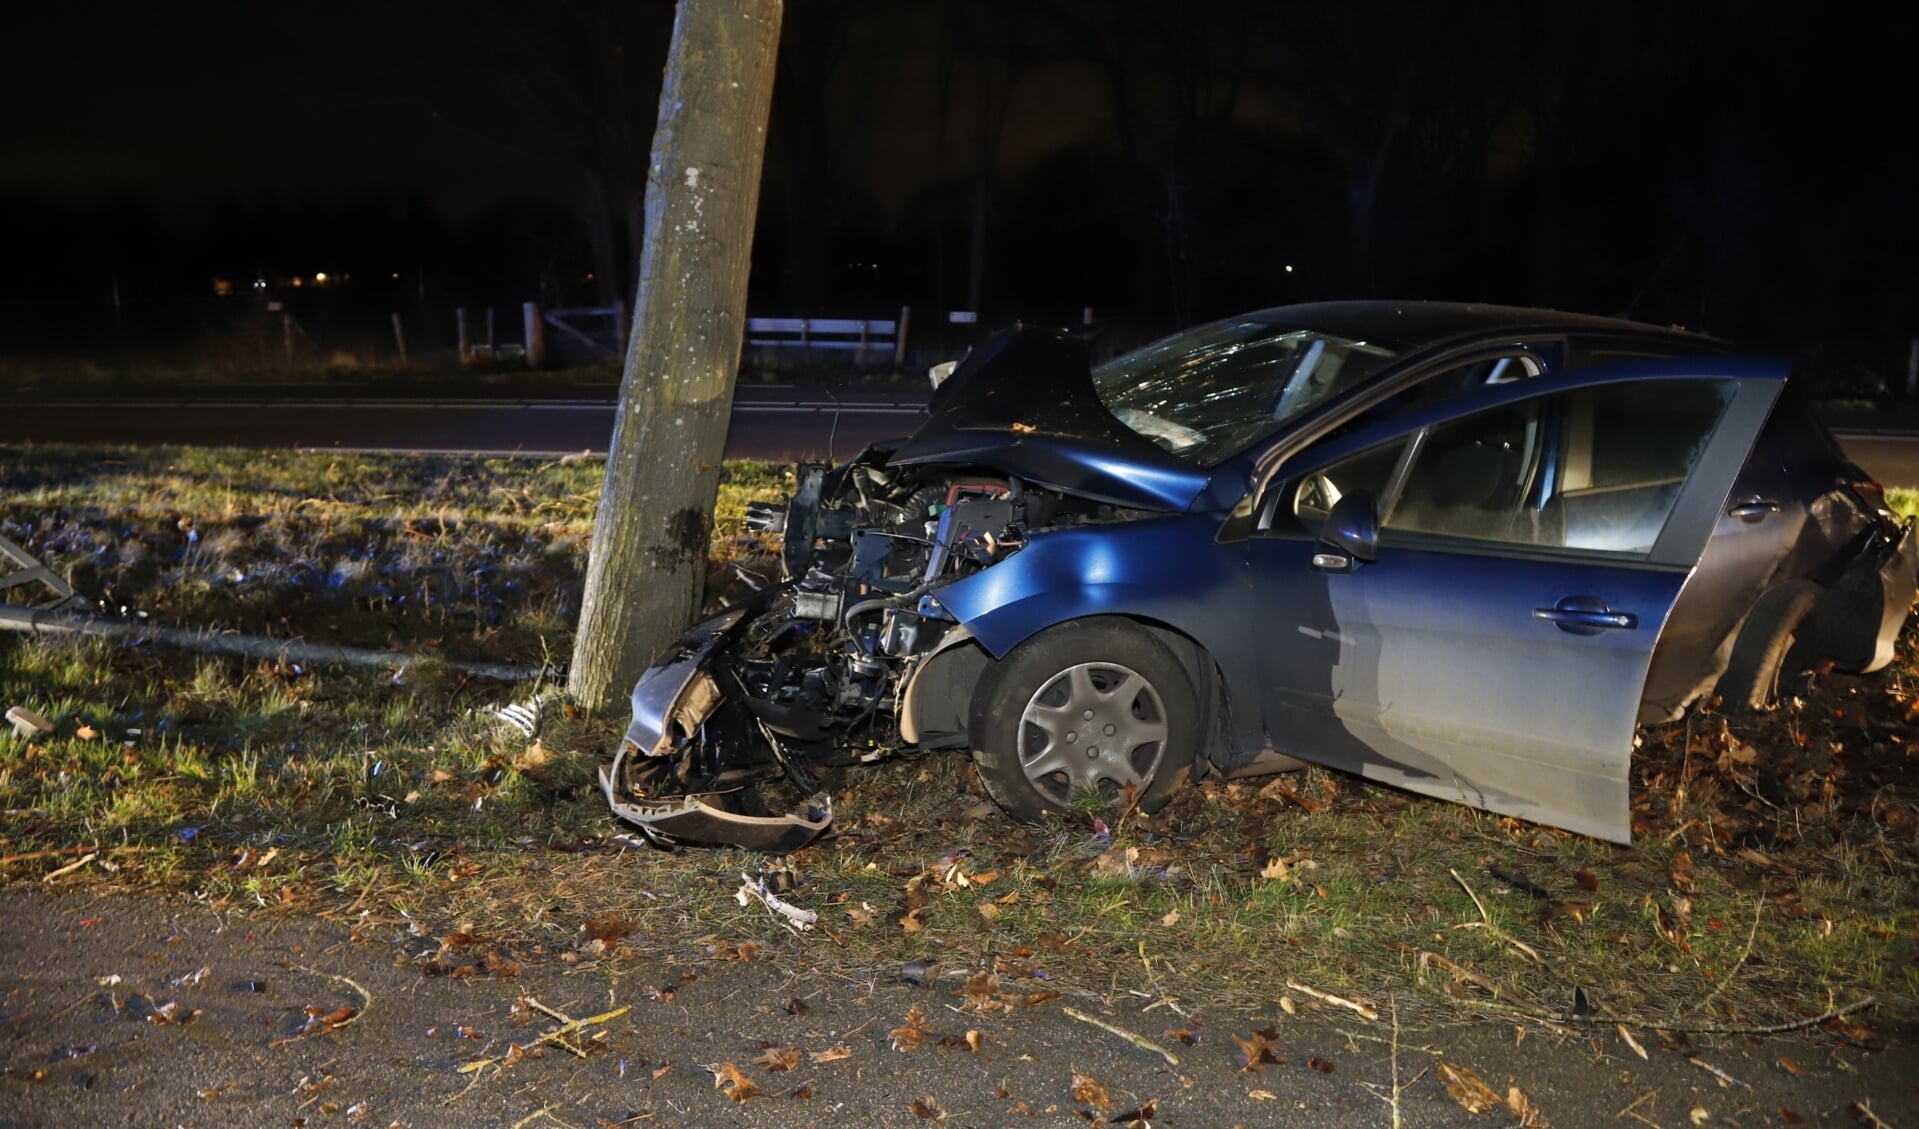 De automobilist botste met zijn voertuig tegen een boom.